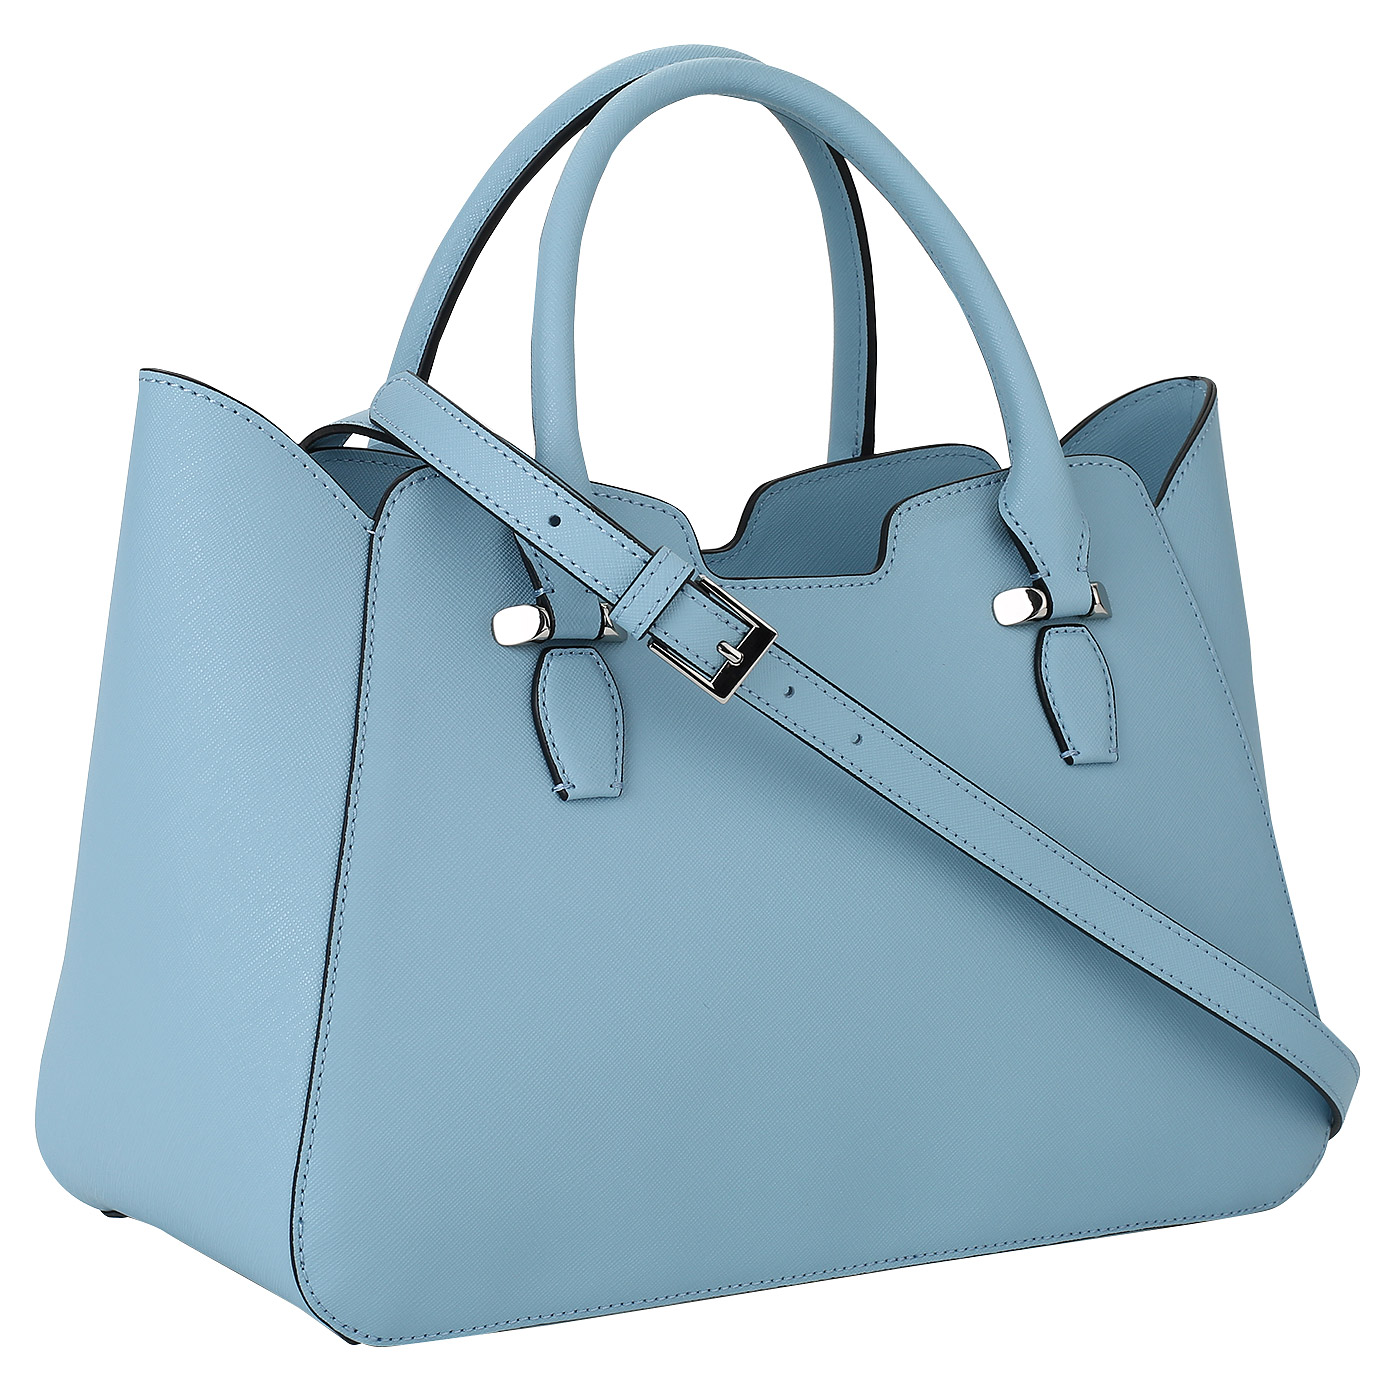 Женская сумка из голубого сафьяна Cromia Perla